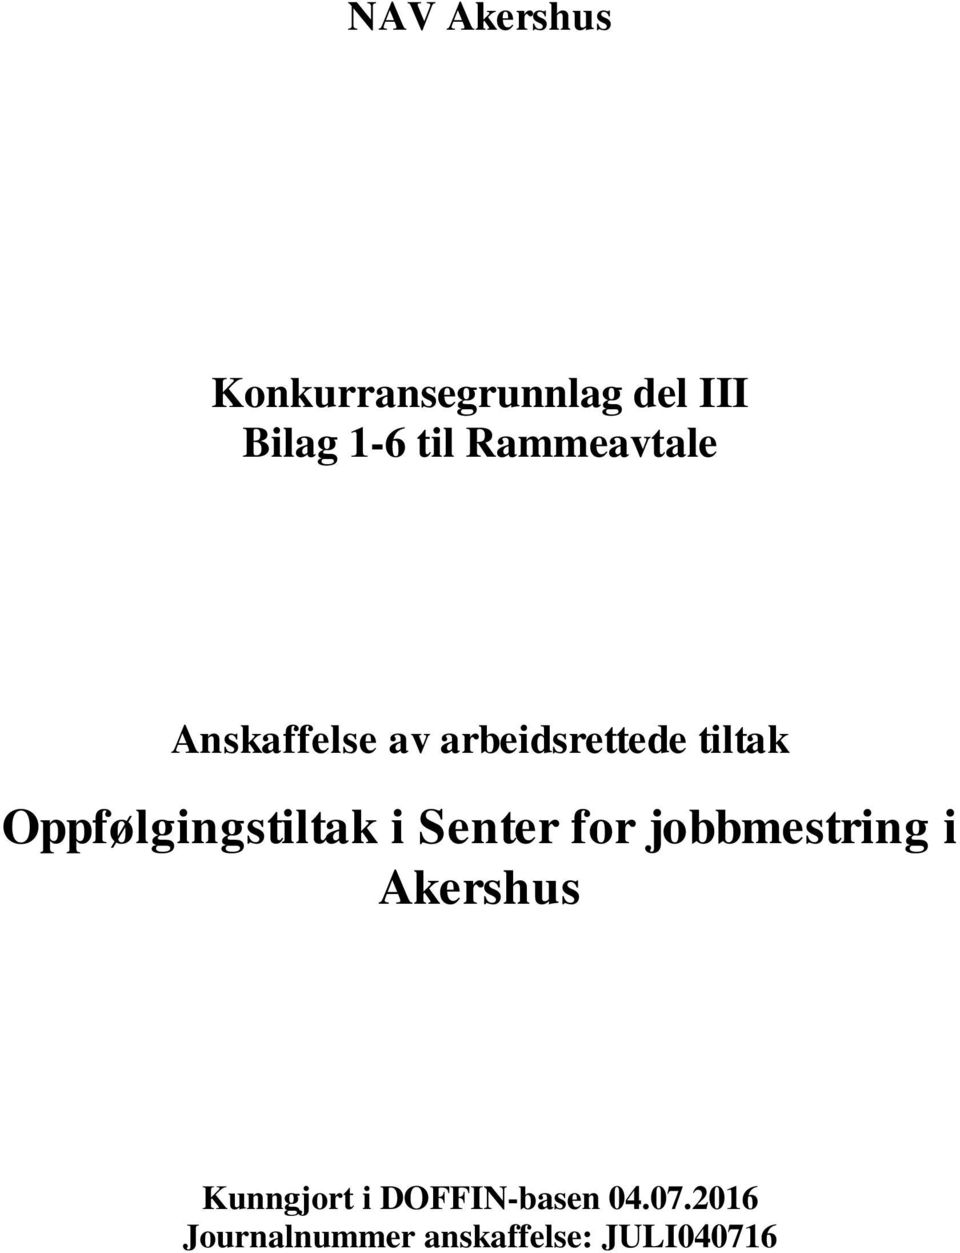 Oppfølgingstiltak i Senter for jobbmestring i Akershus